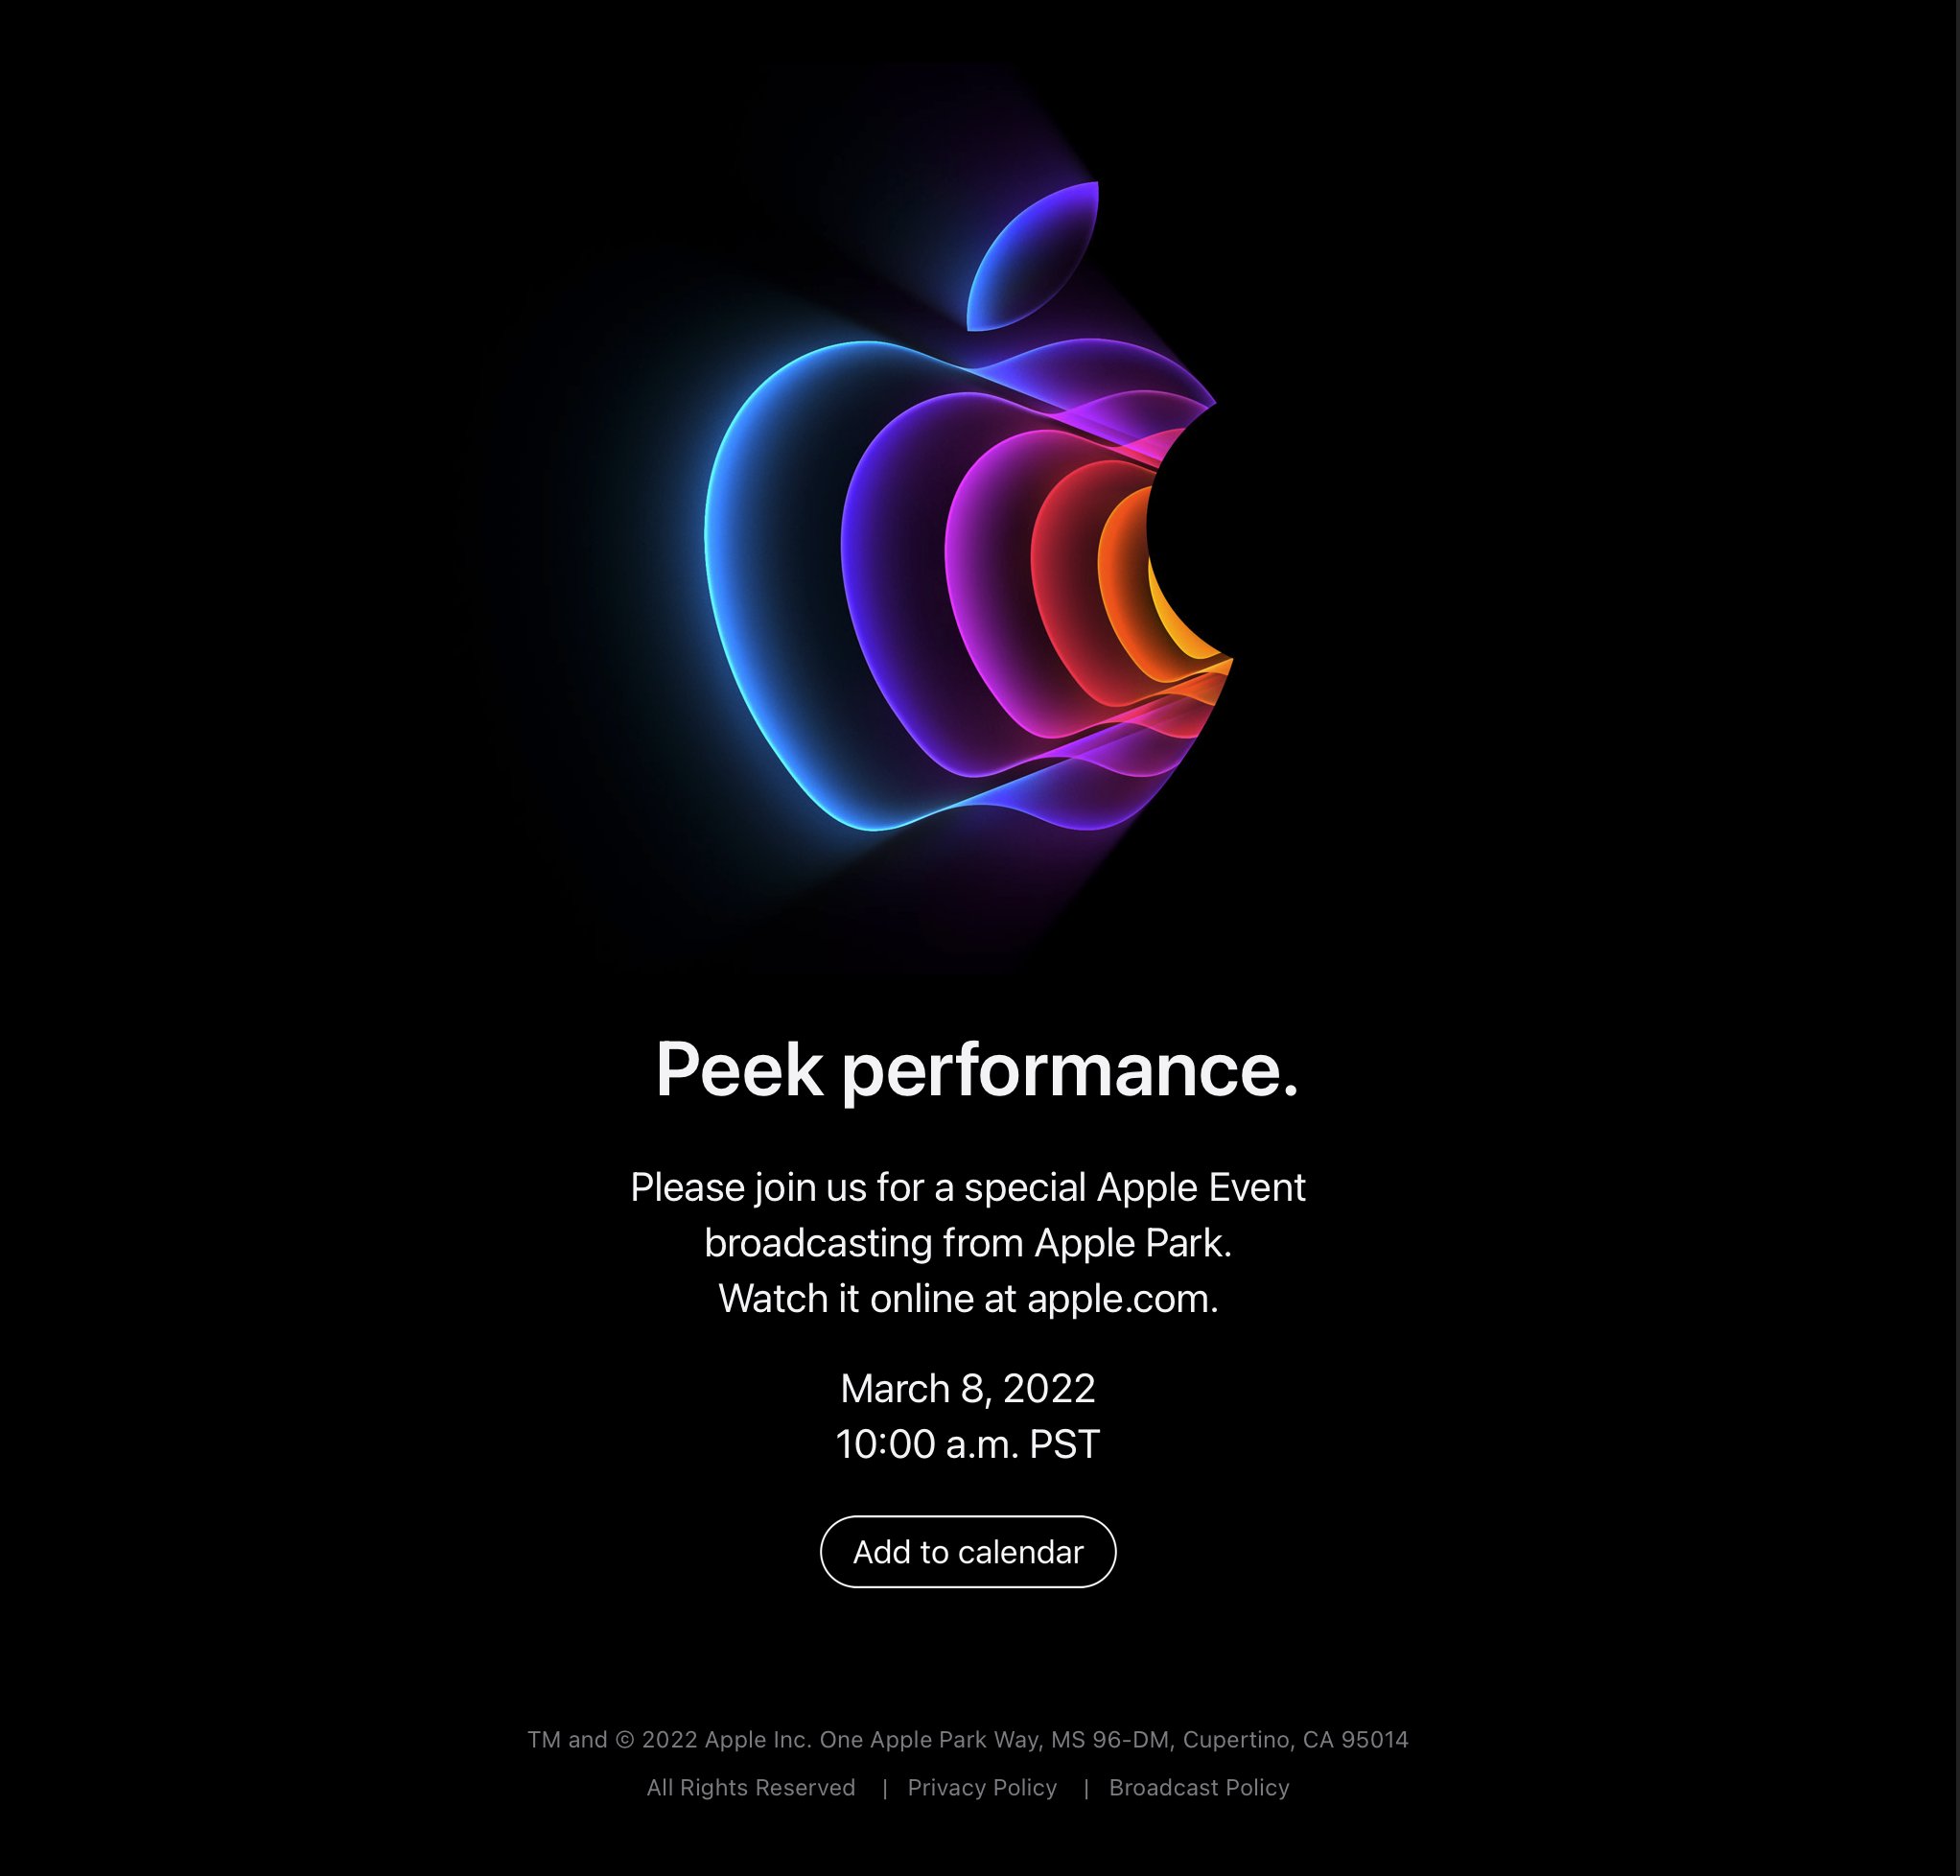 Apple Peak performance